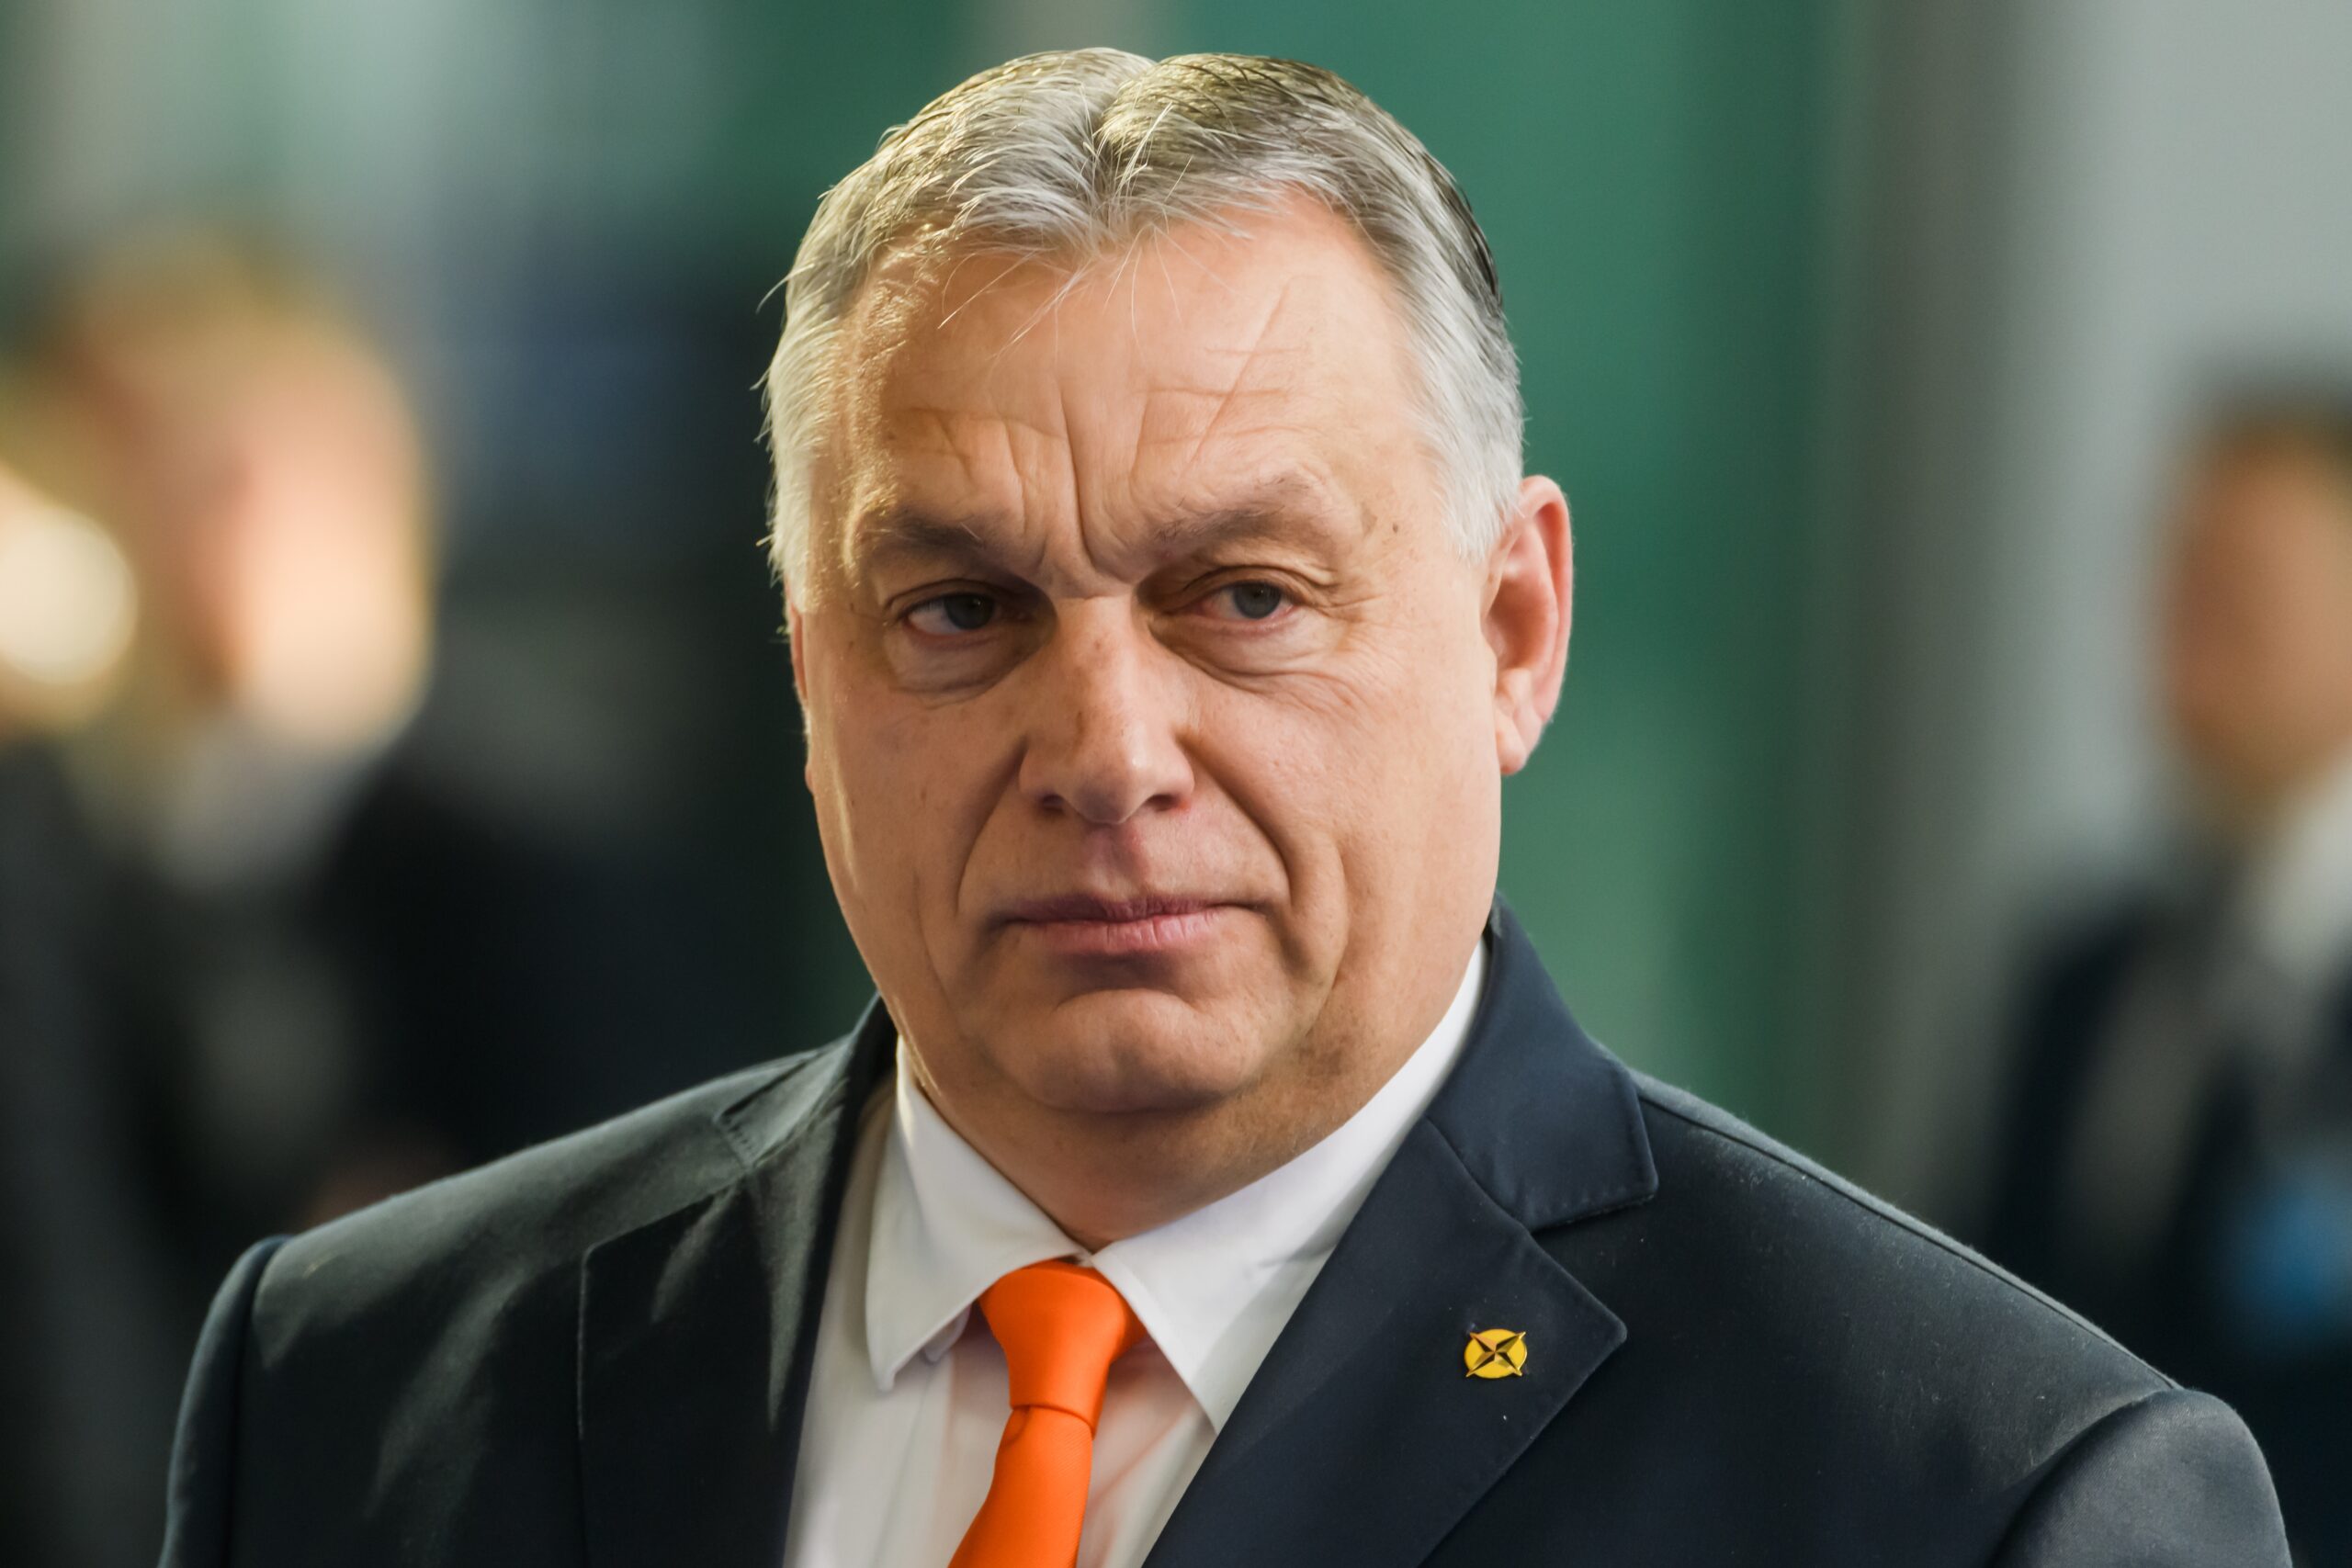 Най-слабото представяне на европейски избори за Орбан досега